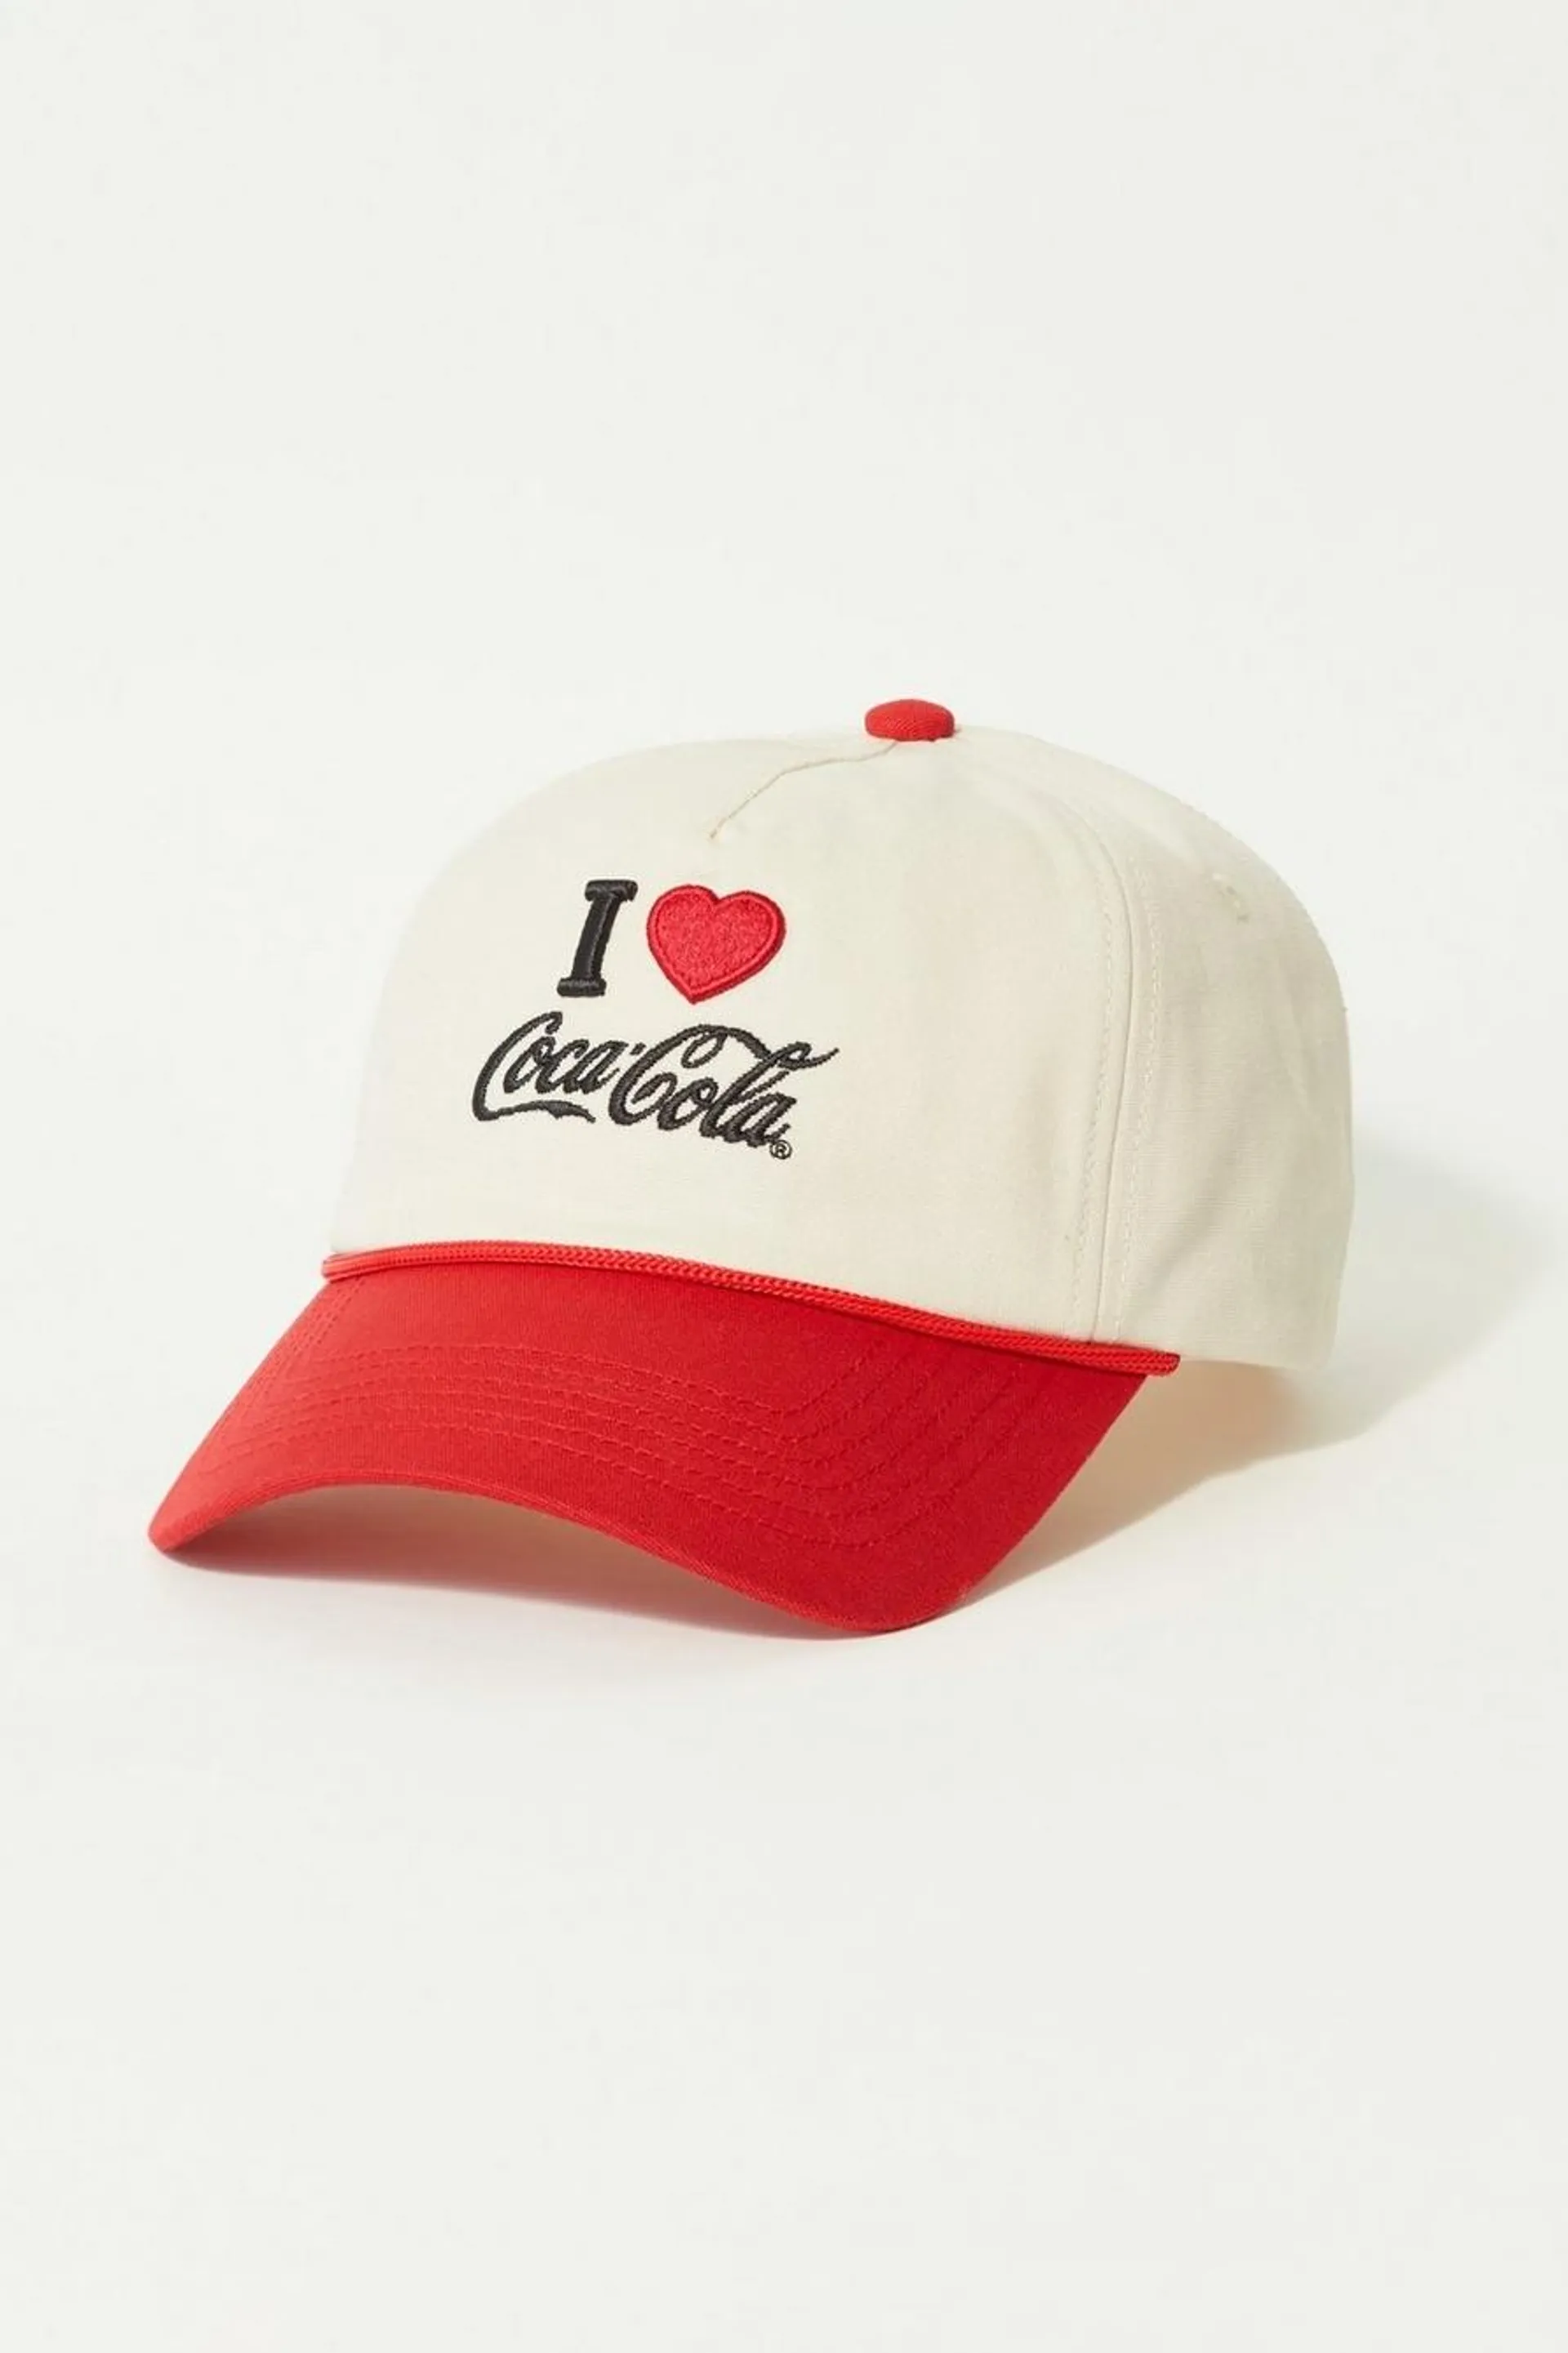 i heart coca cola hat